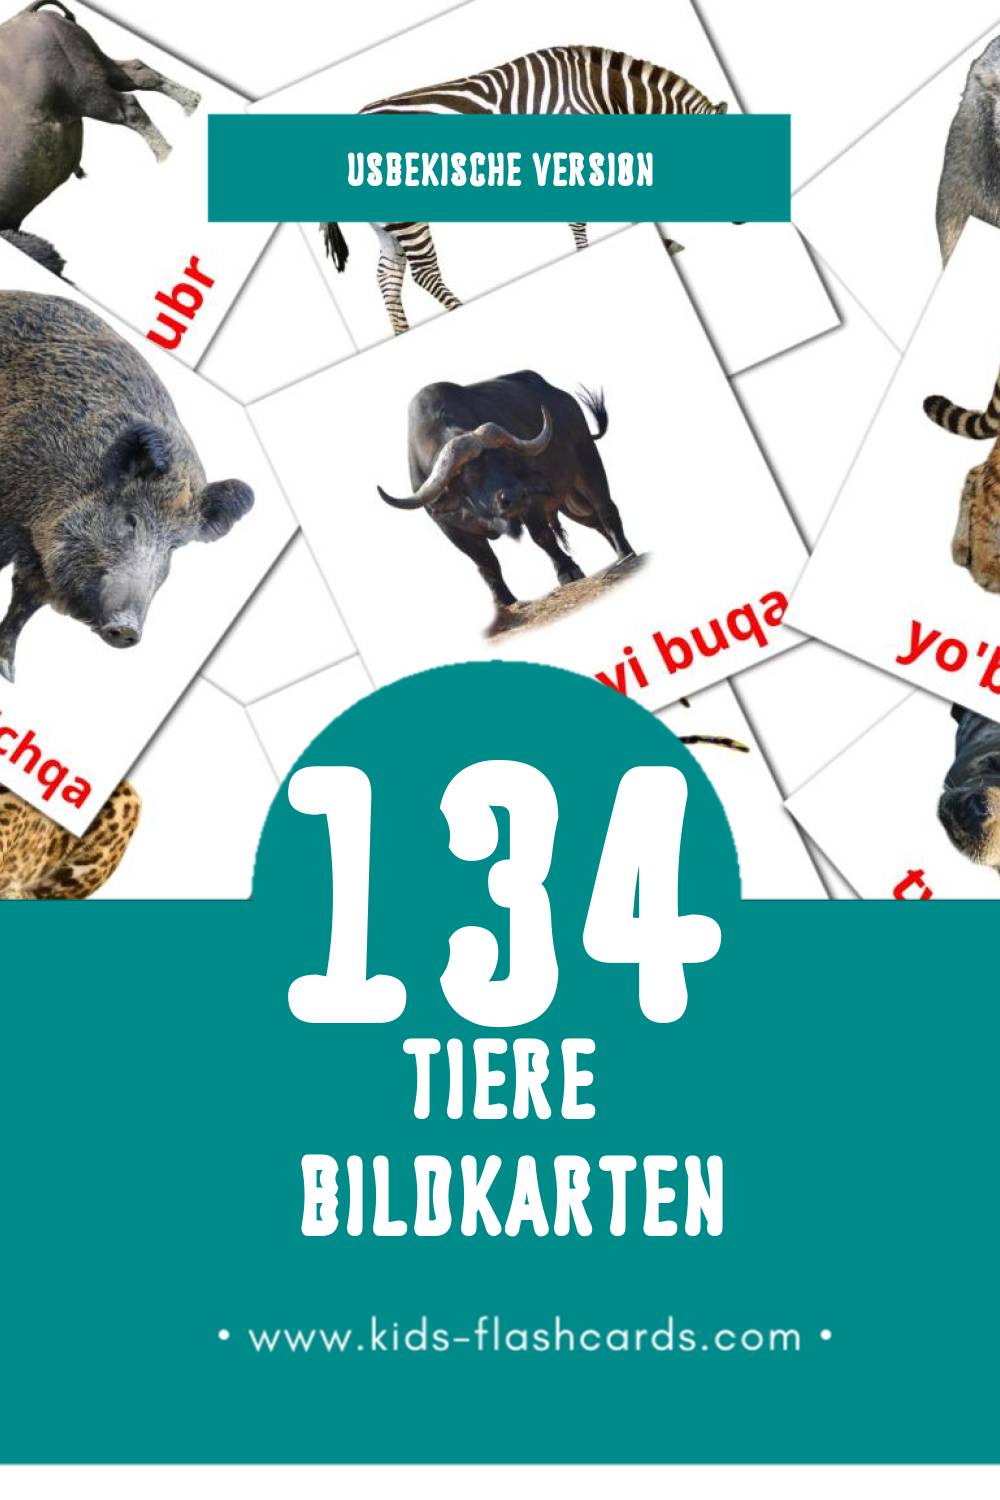 Visual Hayvonlar Flashcards für Kleinkinder (134 Karten in Usbekisch)